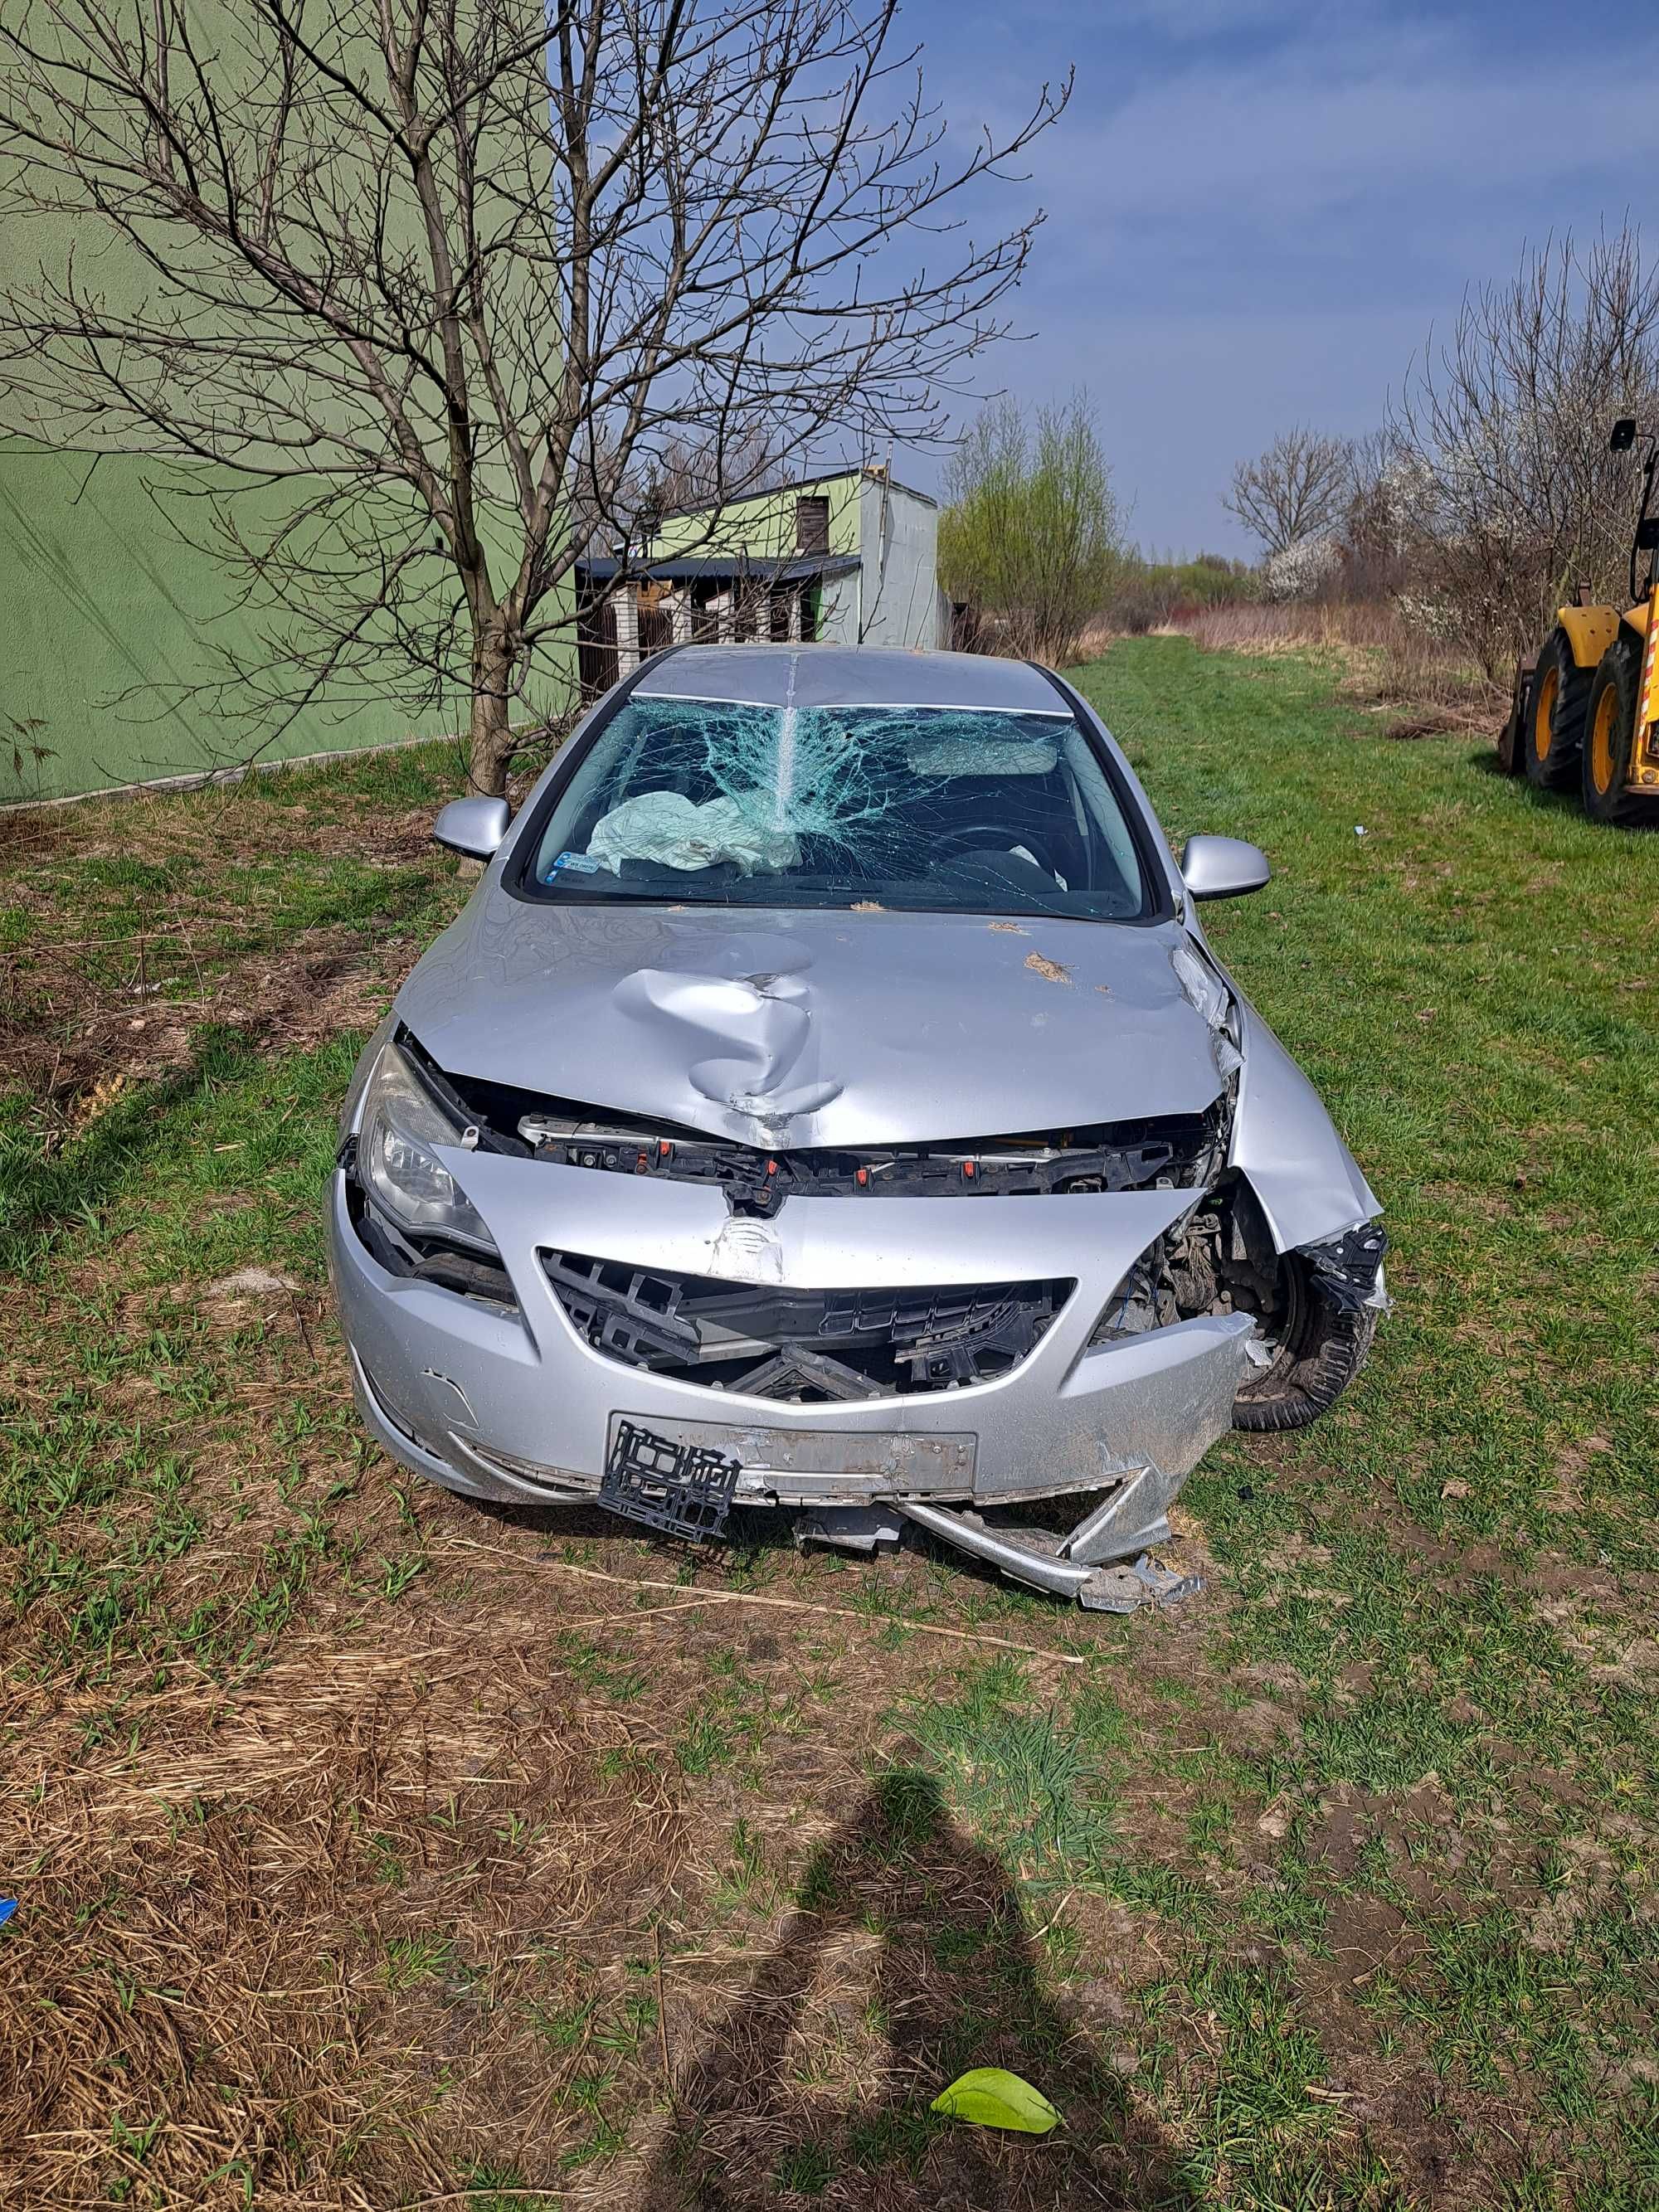 Opel Astra 2011 uszkodzony